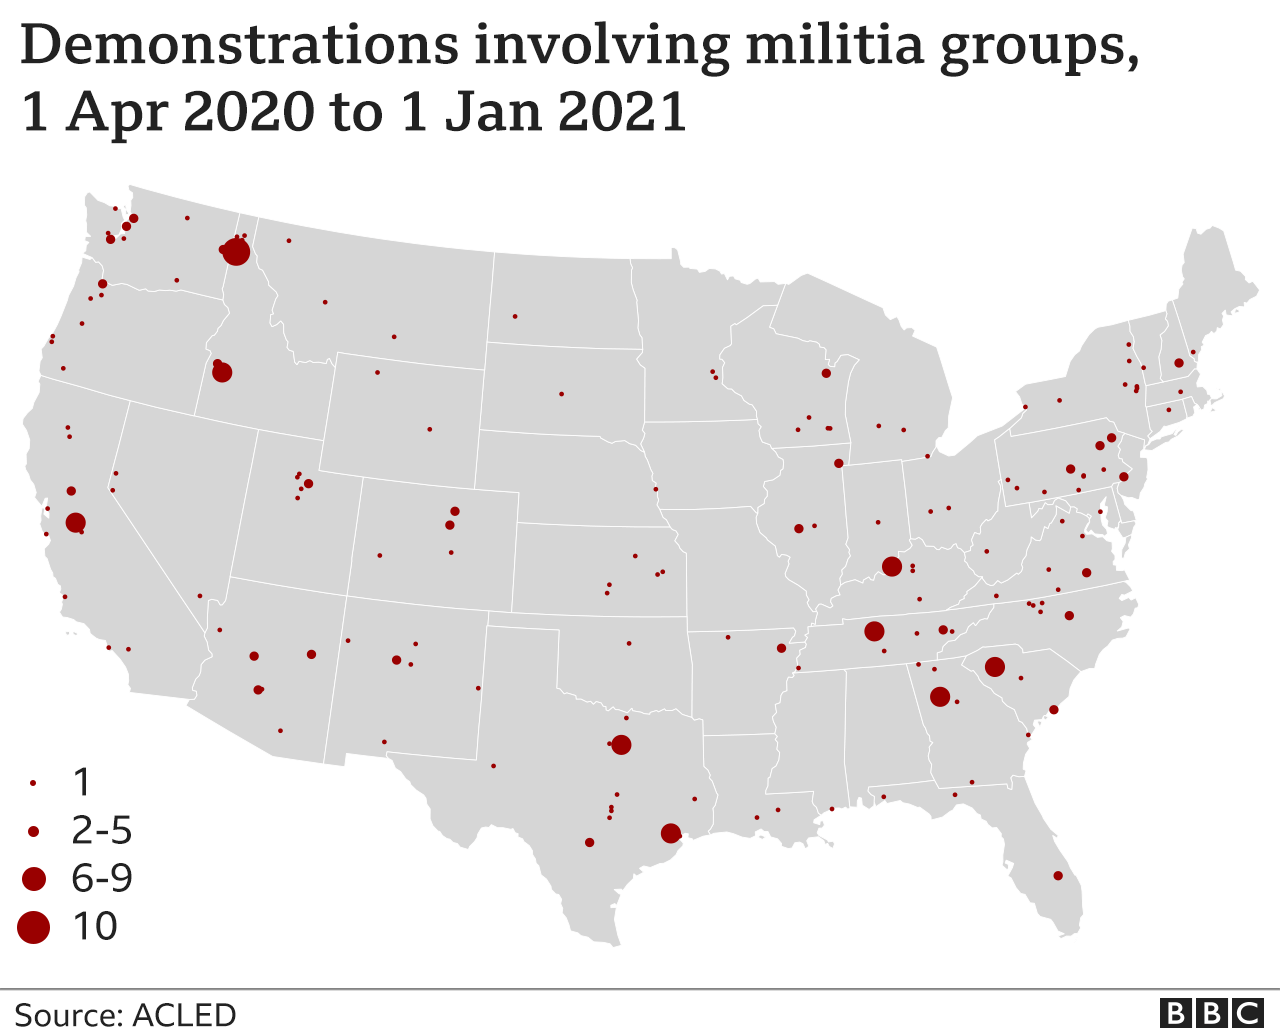  116531625 V2us Militia Demonstrations Map 2x Nc 